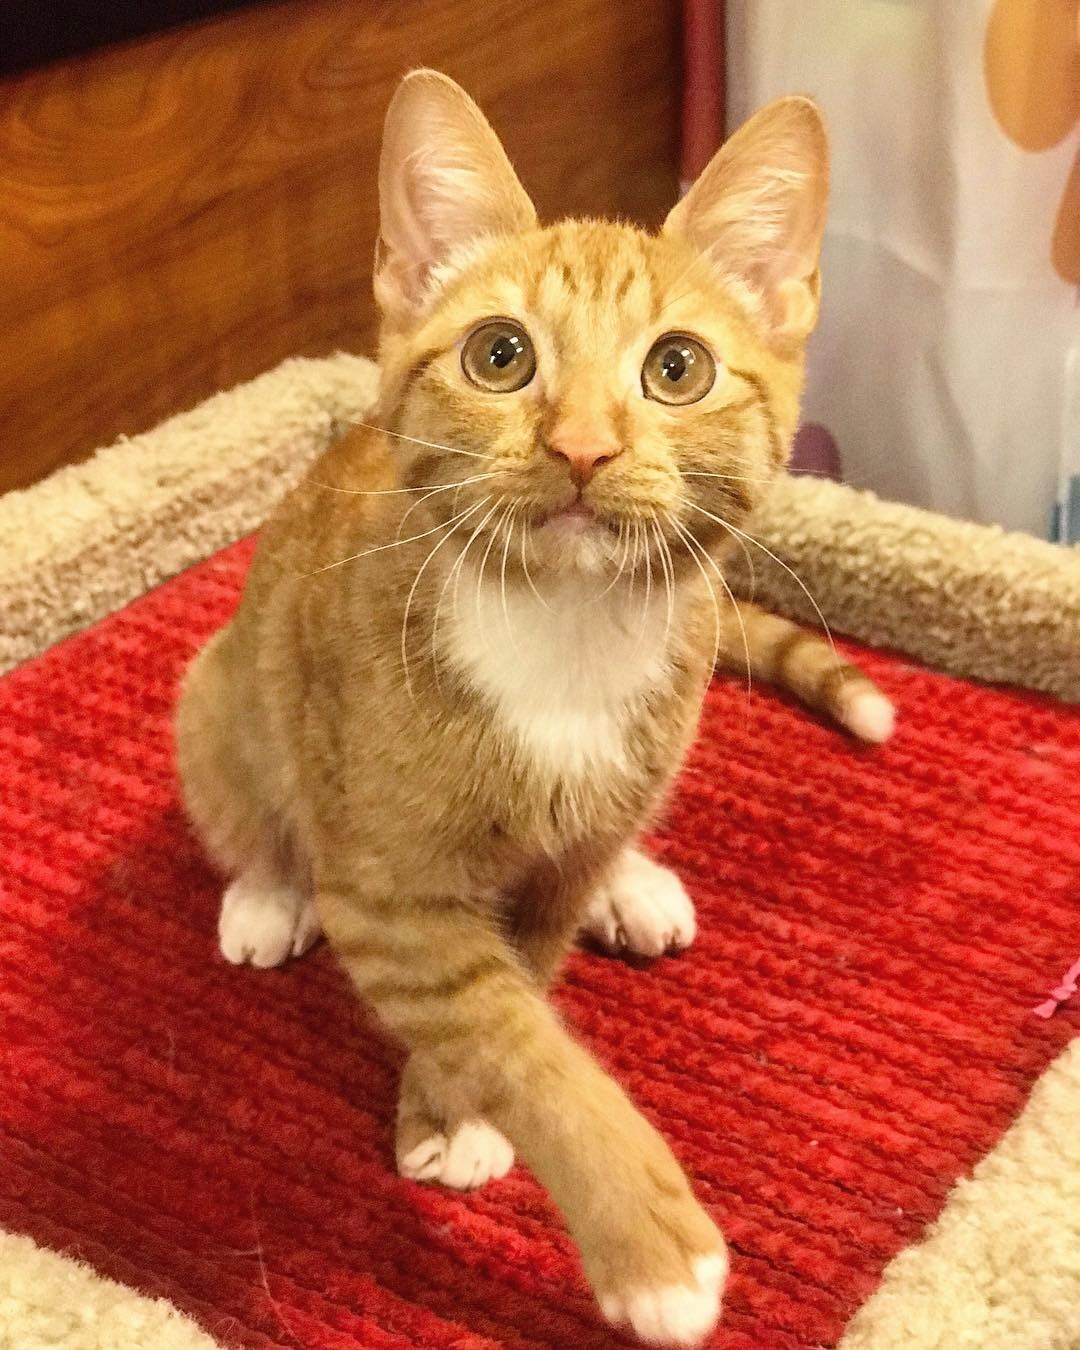 Adopt Cats! — Memphis Pets Alive!